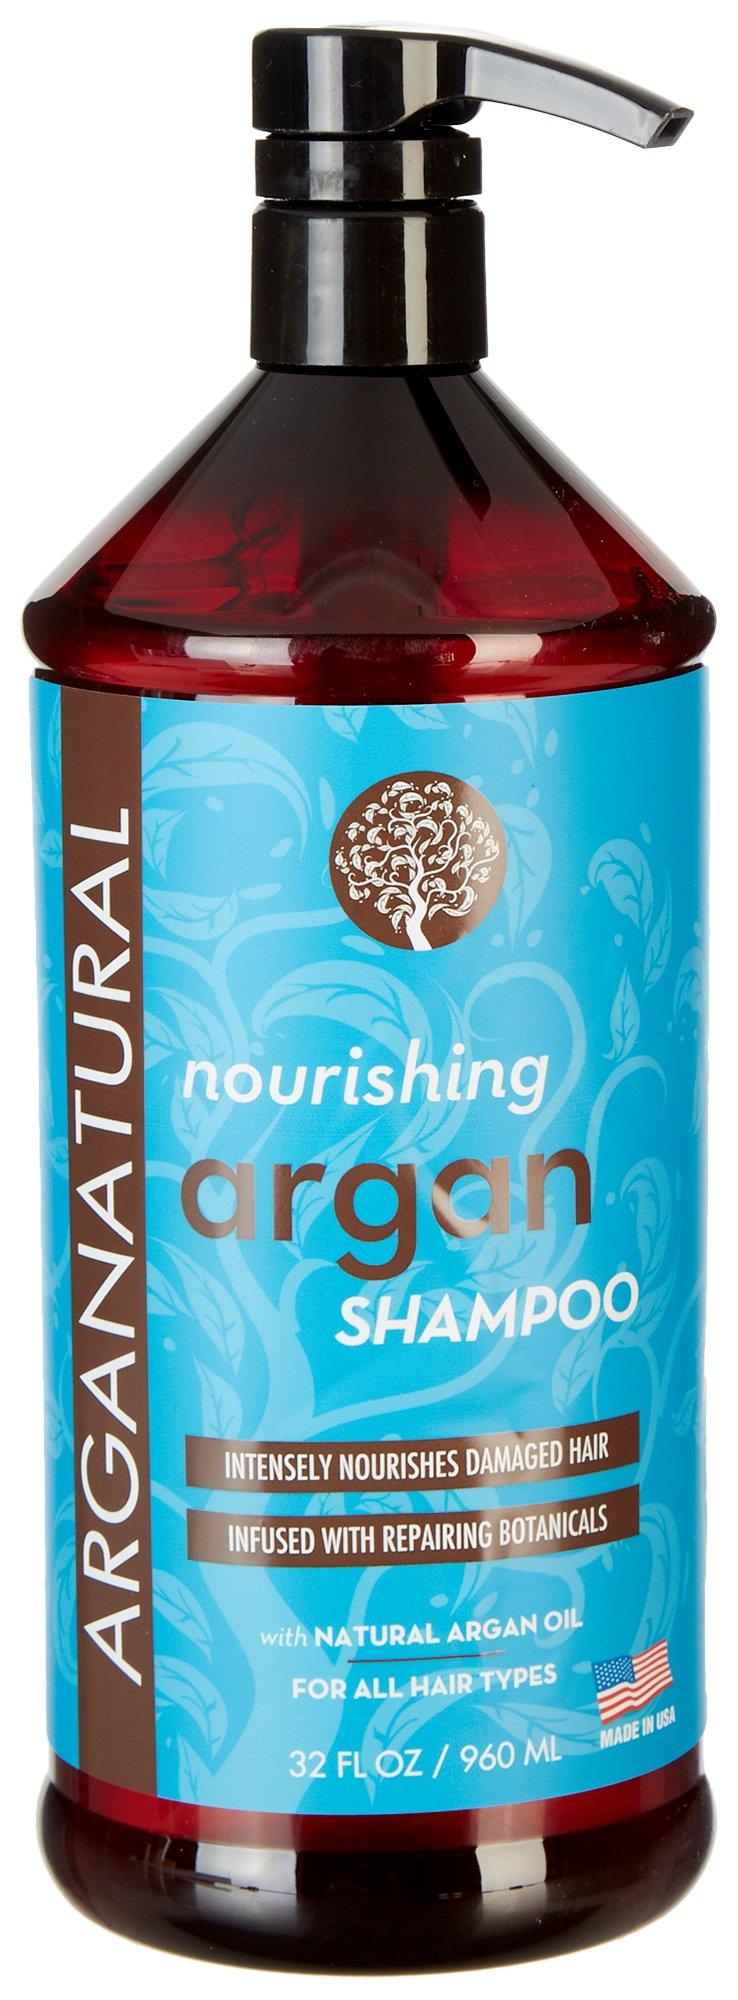 Nourishing Argan Shampoo 32 fl. oz.